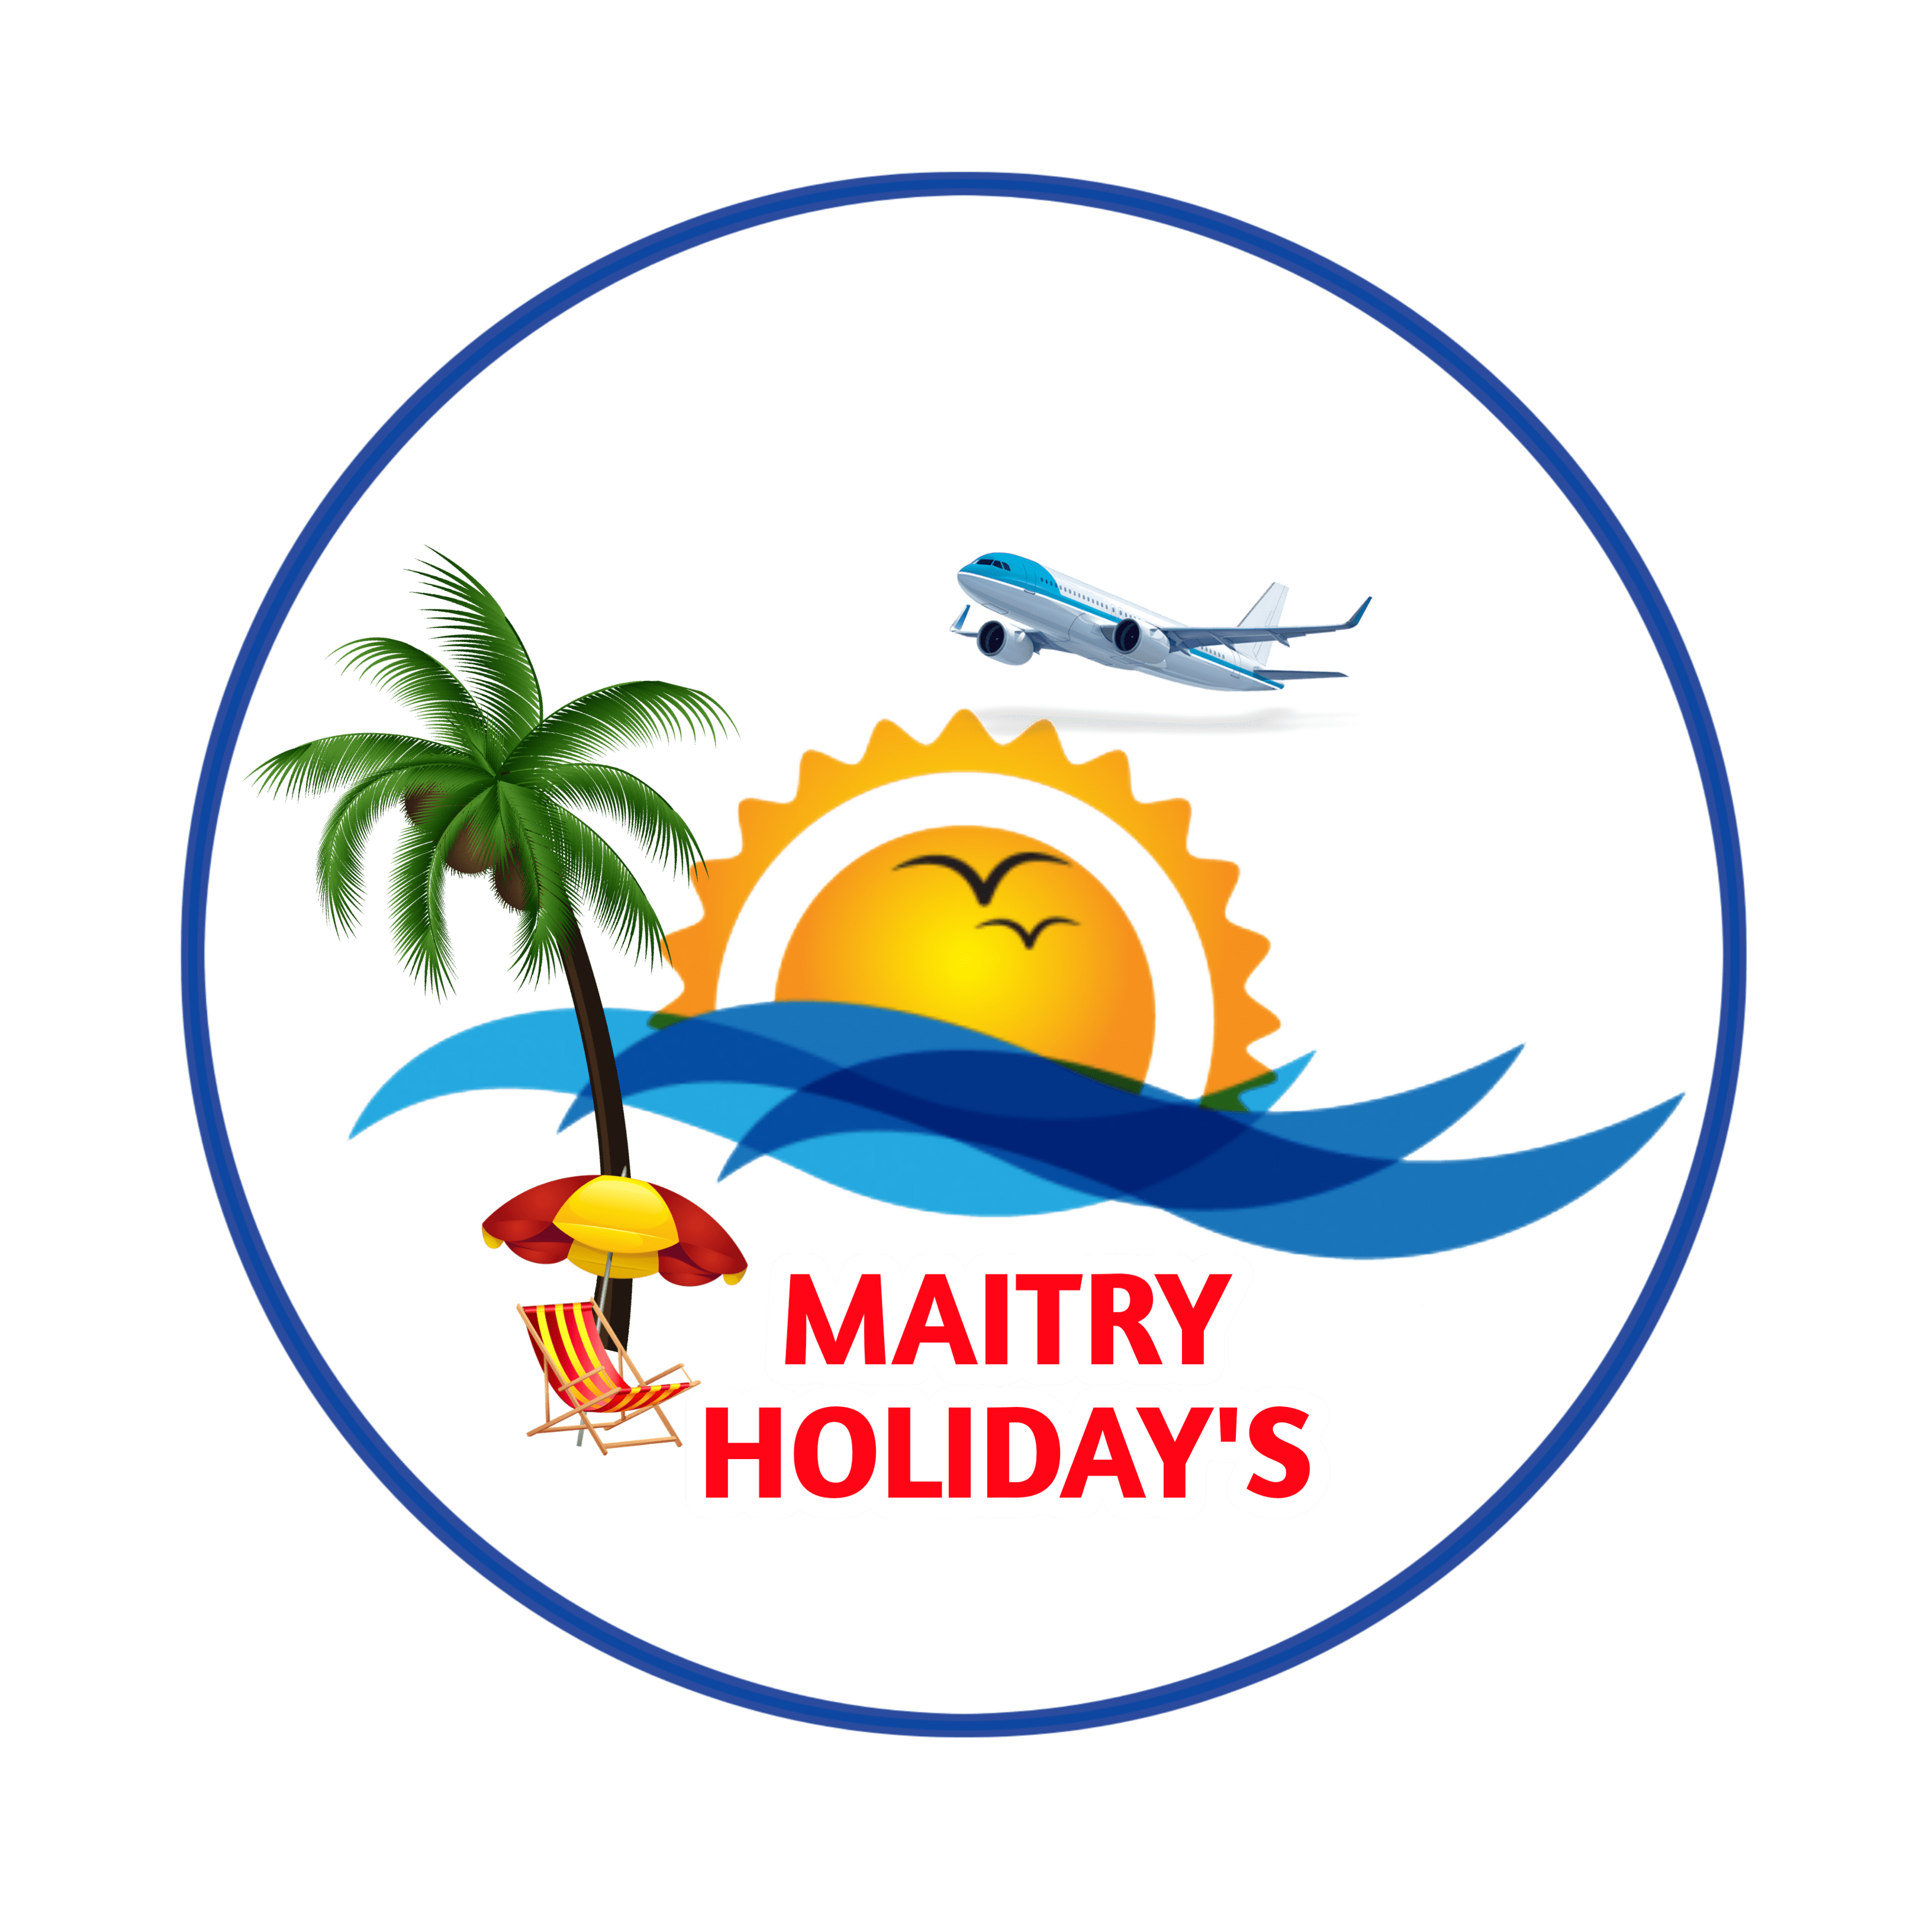 Maitrty Holidays